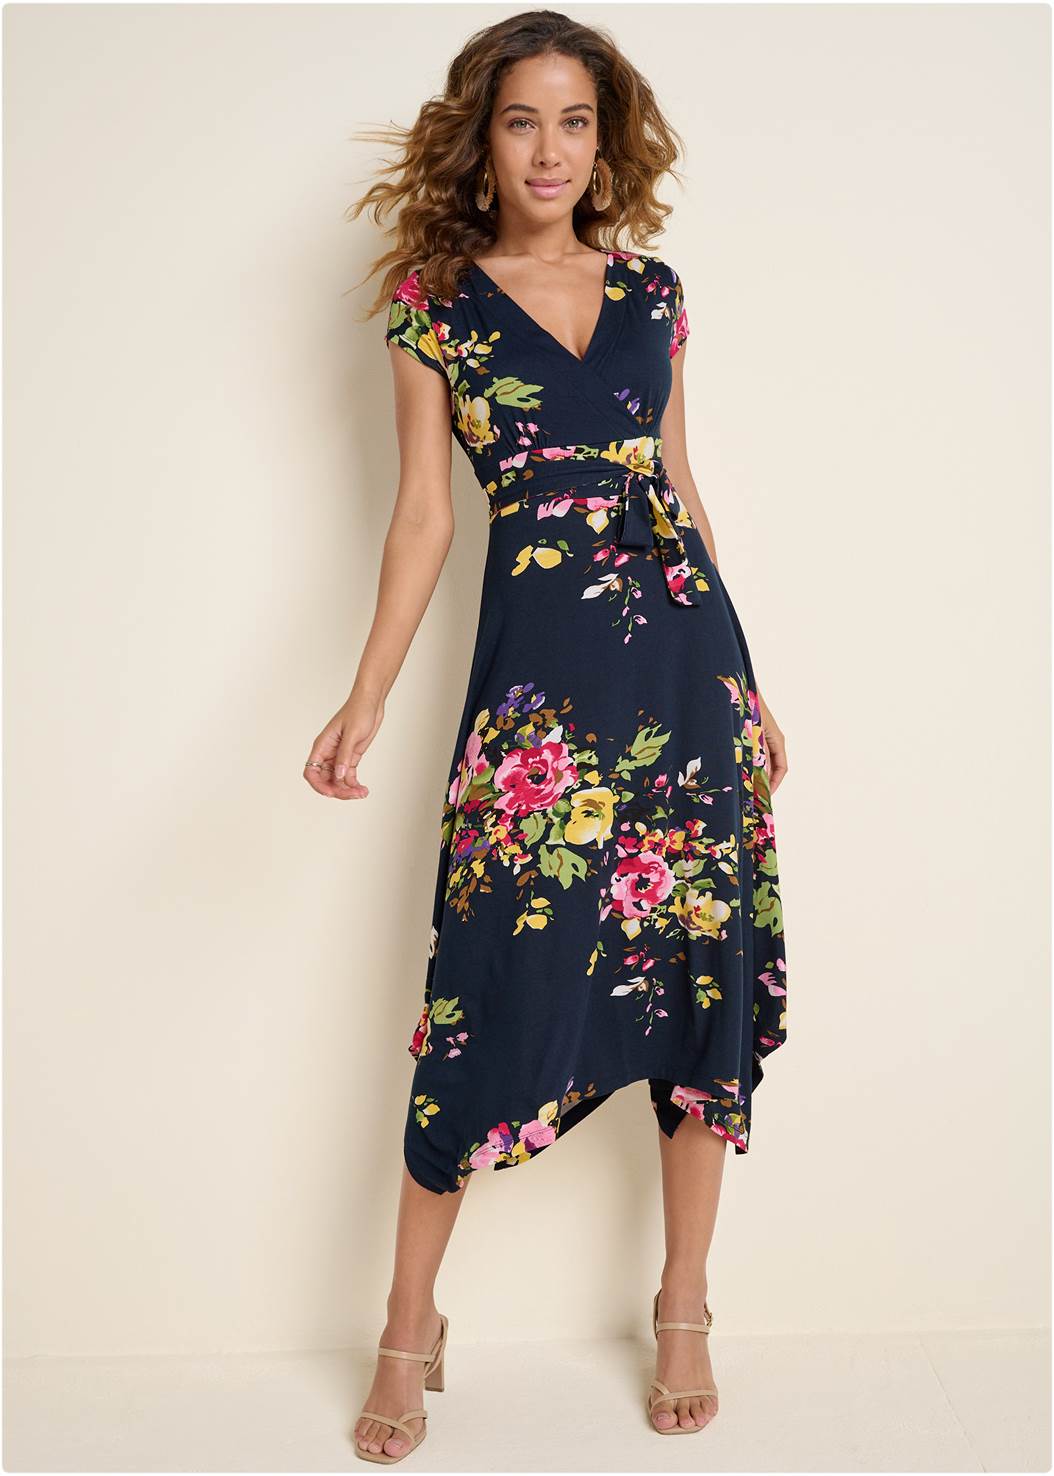 Floral Printed Dress in Navy Multi | VENUS